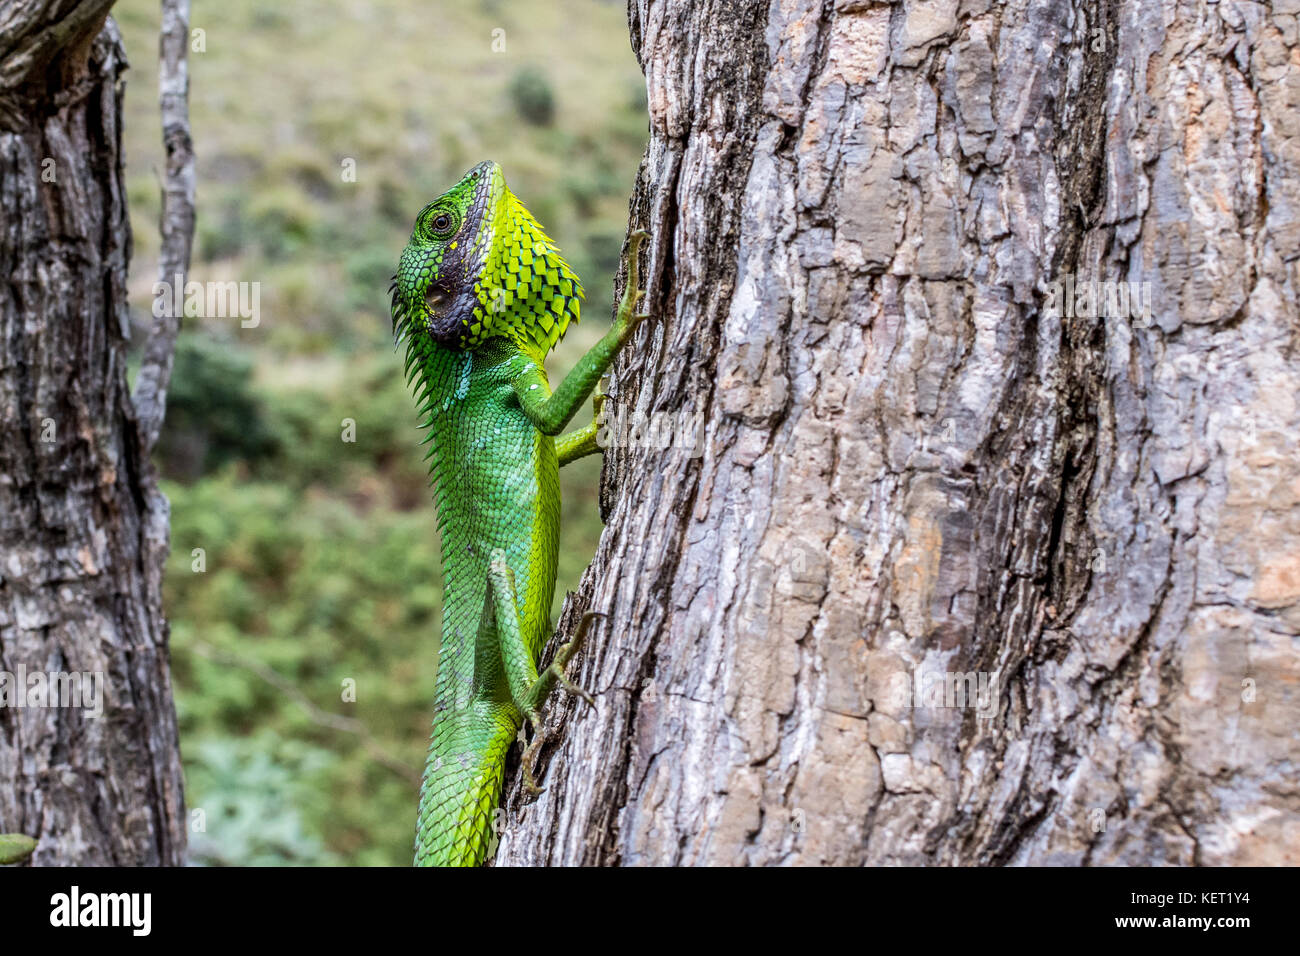 Green Garden Lizard (Calotes calotes) Stock Photo